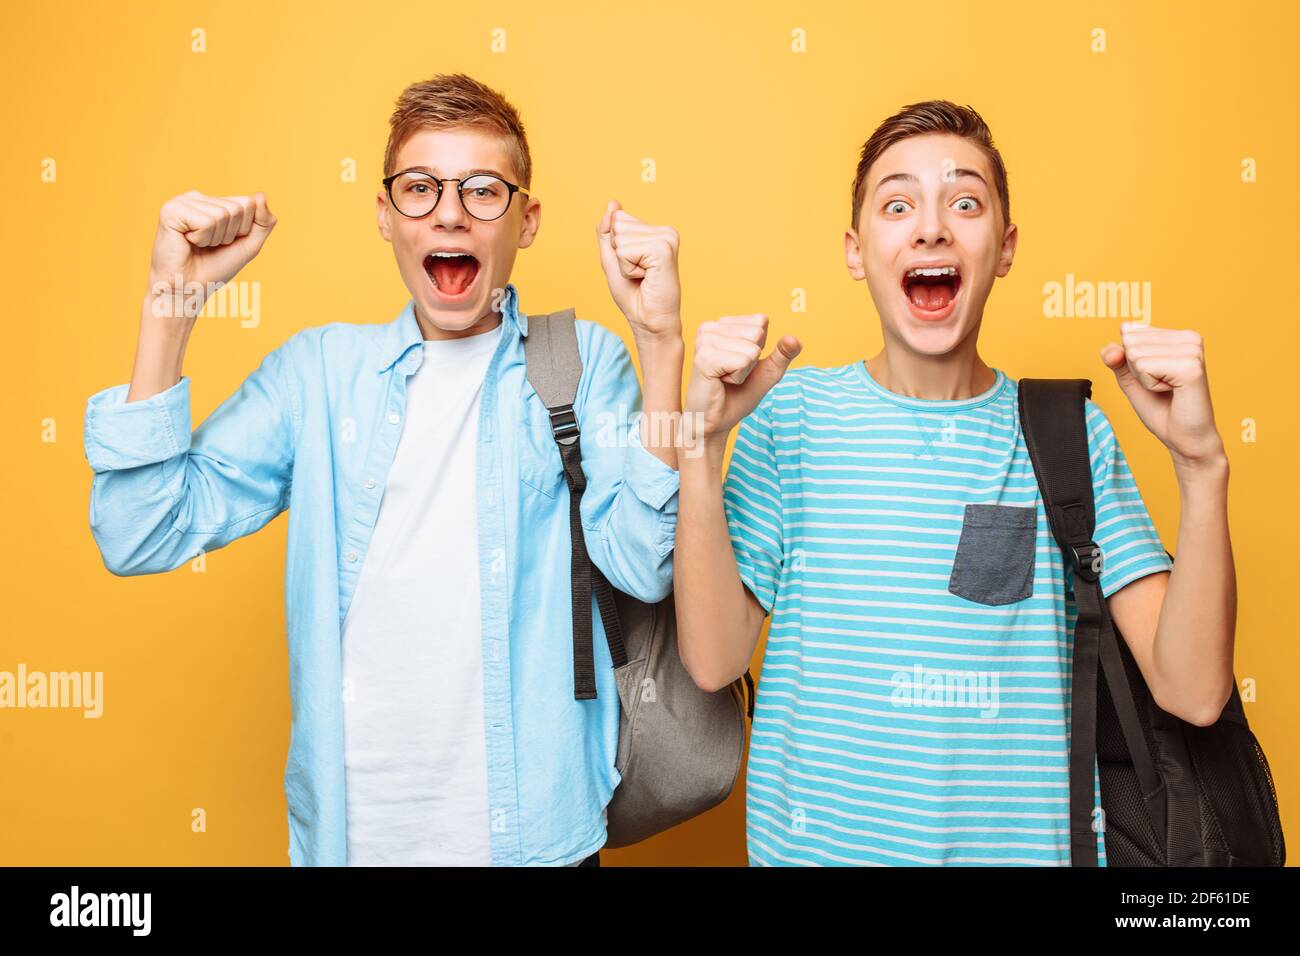 Retrato de dos adolescentes conmocionados, los chicos muestran un gesto de victoria Foto de stock